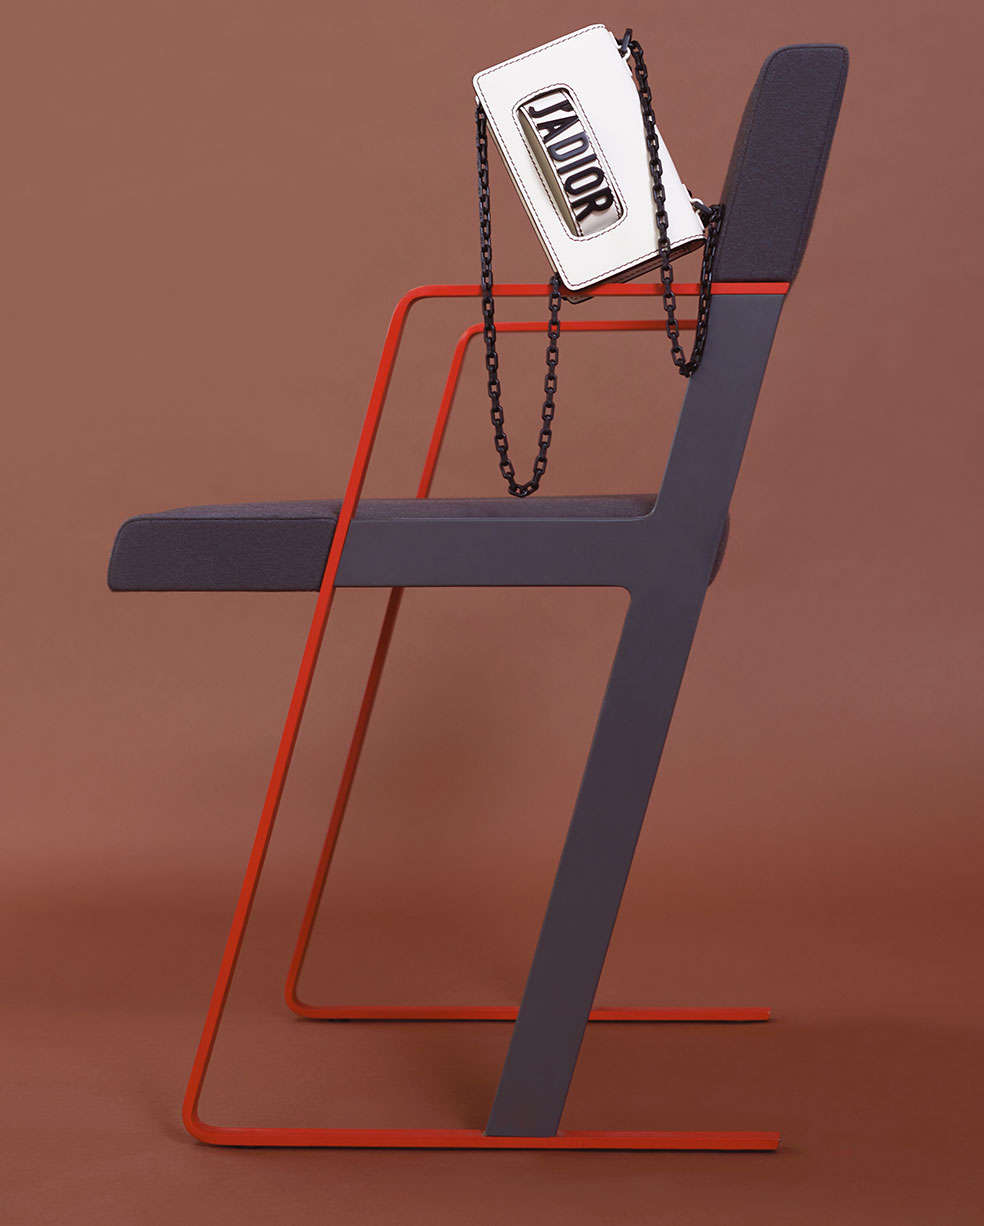 A Dior bag on a chair